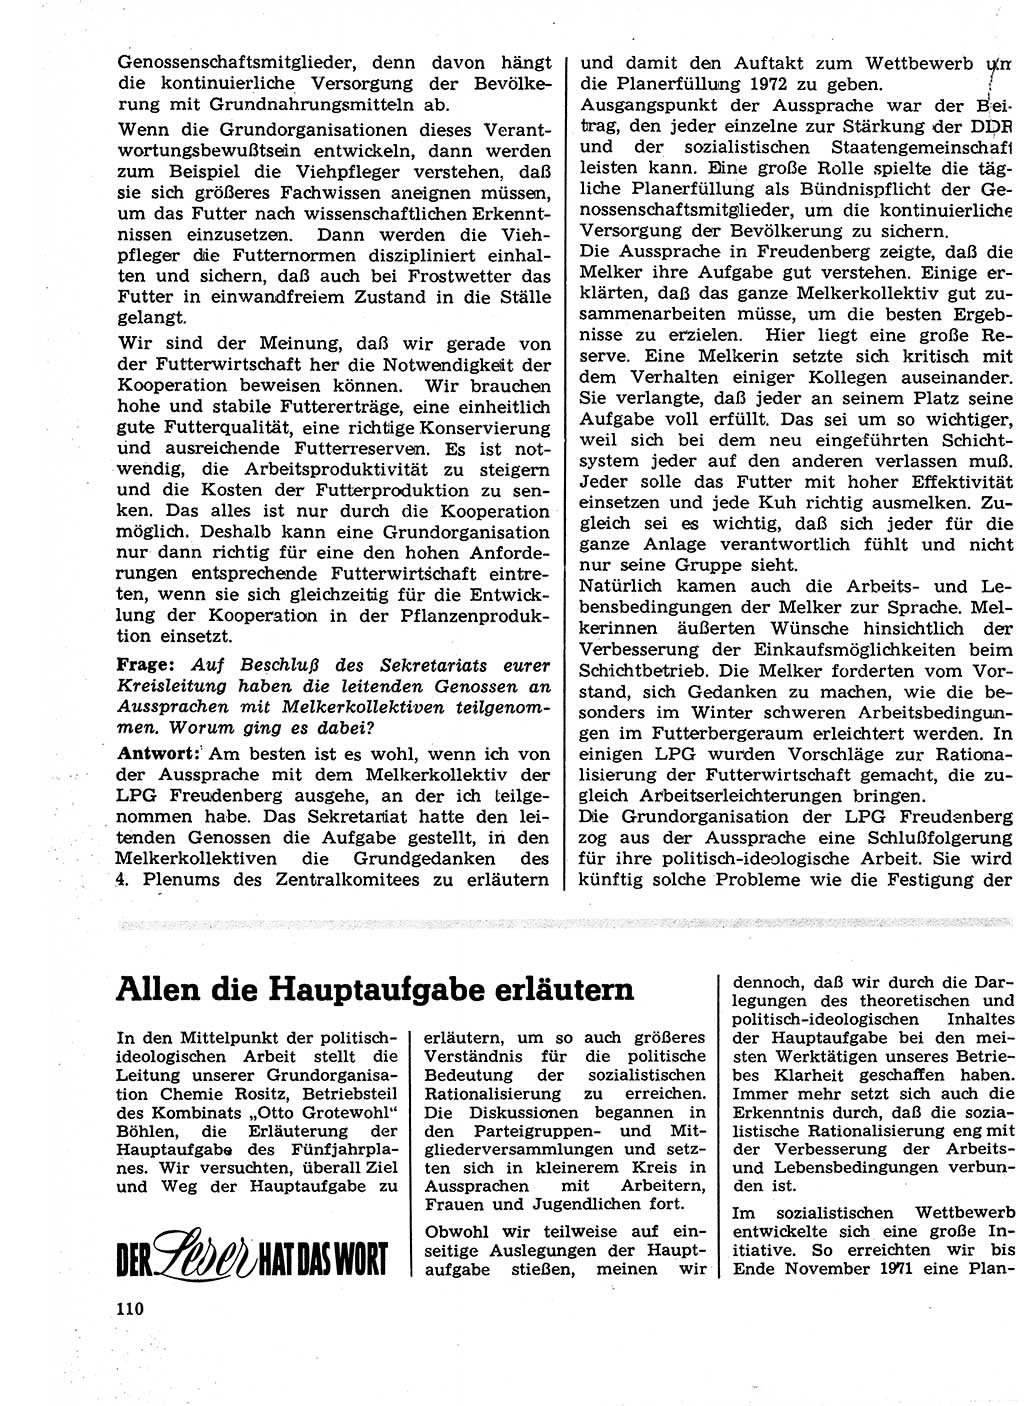 Neuer Weg (NW), Organ des Zentralkomitees (ZK) der SED (Sozialistische Einheitspartei Deutschlands) für Fragen des Parteilebens, 27. Jahrgang [Deutsche Demokratische Republik (DDR)] 1972, Seite 110 (NW ZK SED DDR 1972, S. 110)